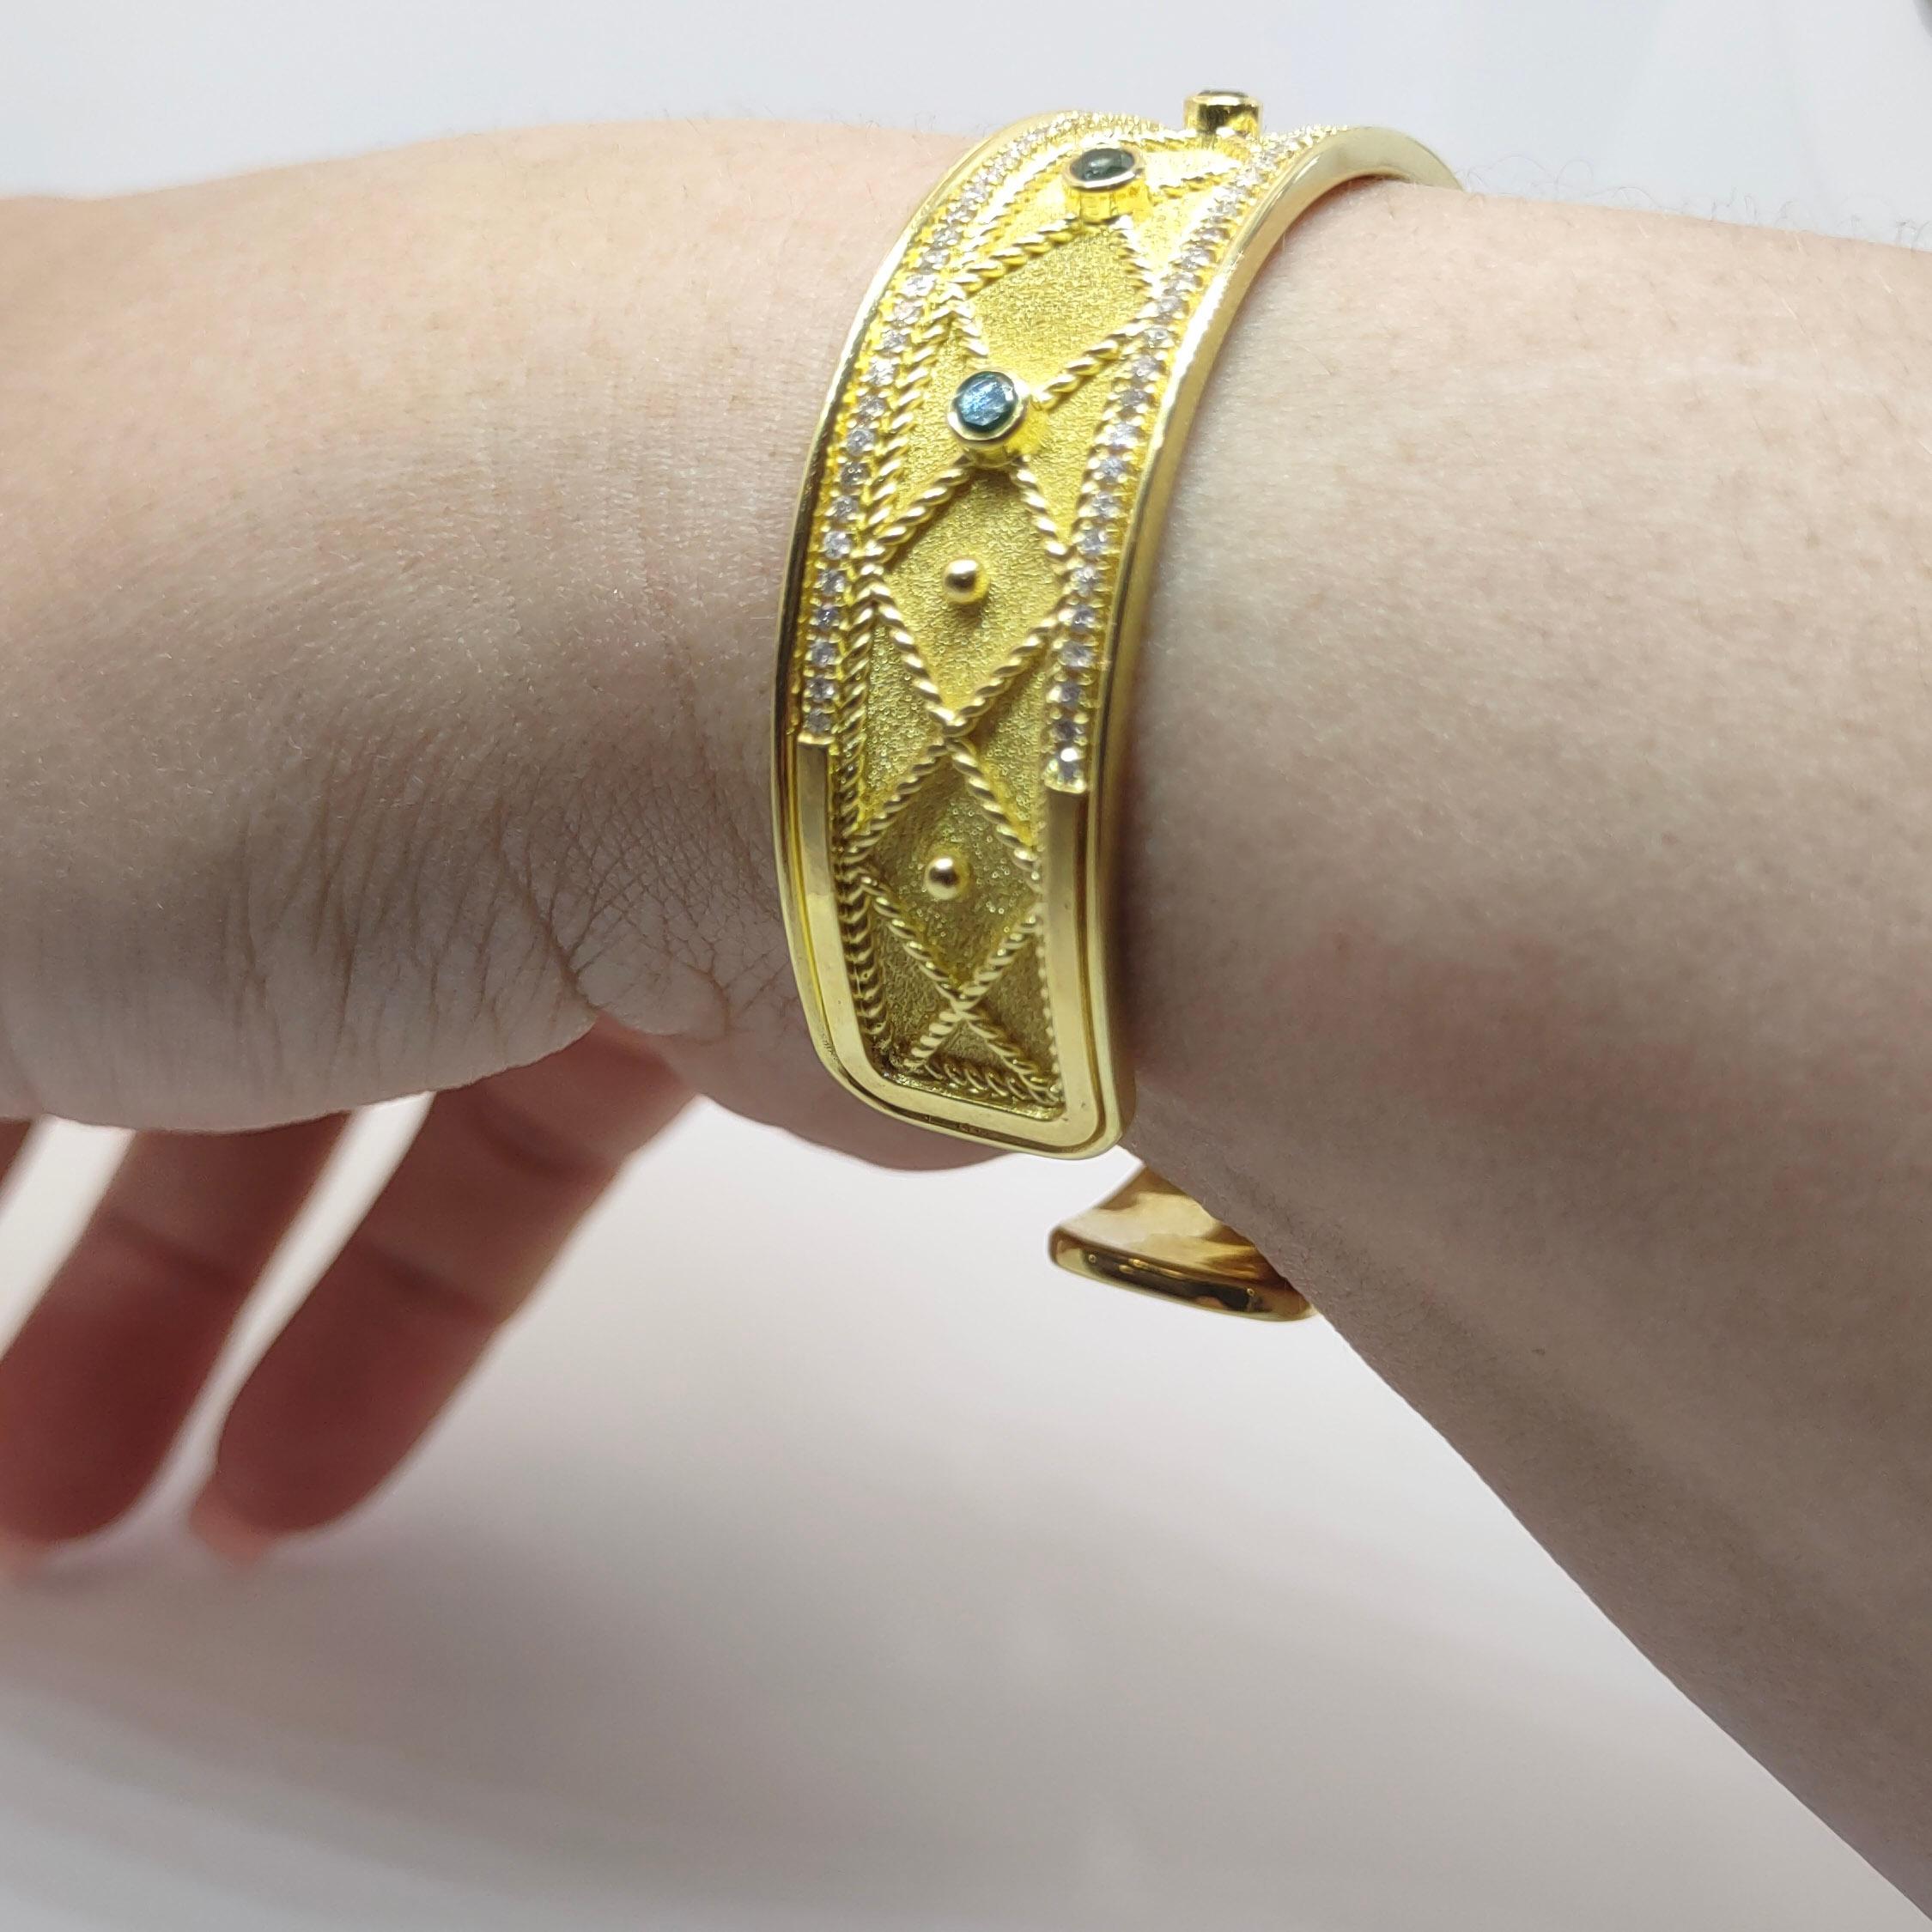 Der Designer S.Georgios präsentiert ein handgefertigtes Armreif-Armband aus 18 Karat Gelbgold. Dieses atemberaubende Armband ist mikroskopisch mit Granulationsarbeiten im byzantinischen Stil mit gedrehten Drähten und Perlen verziert, die im Kontrast